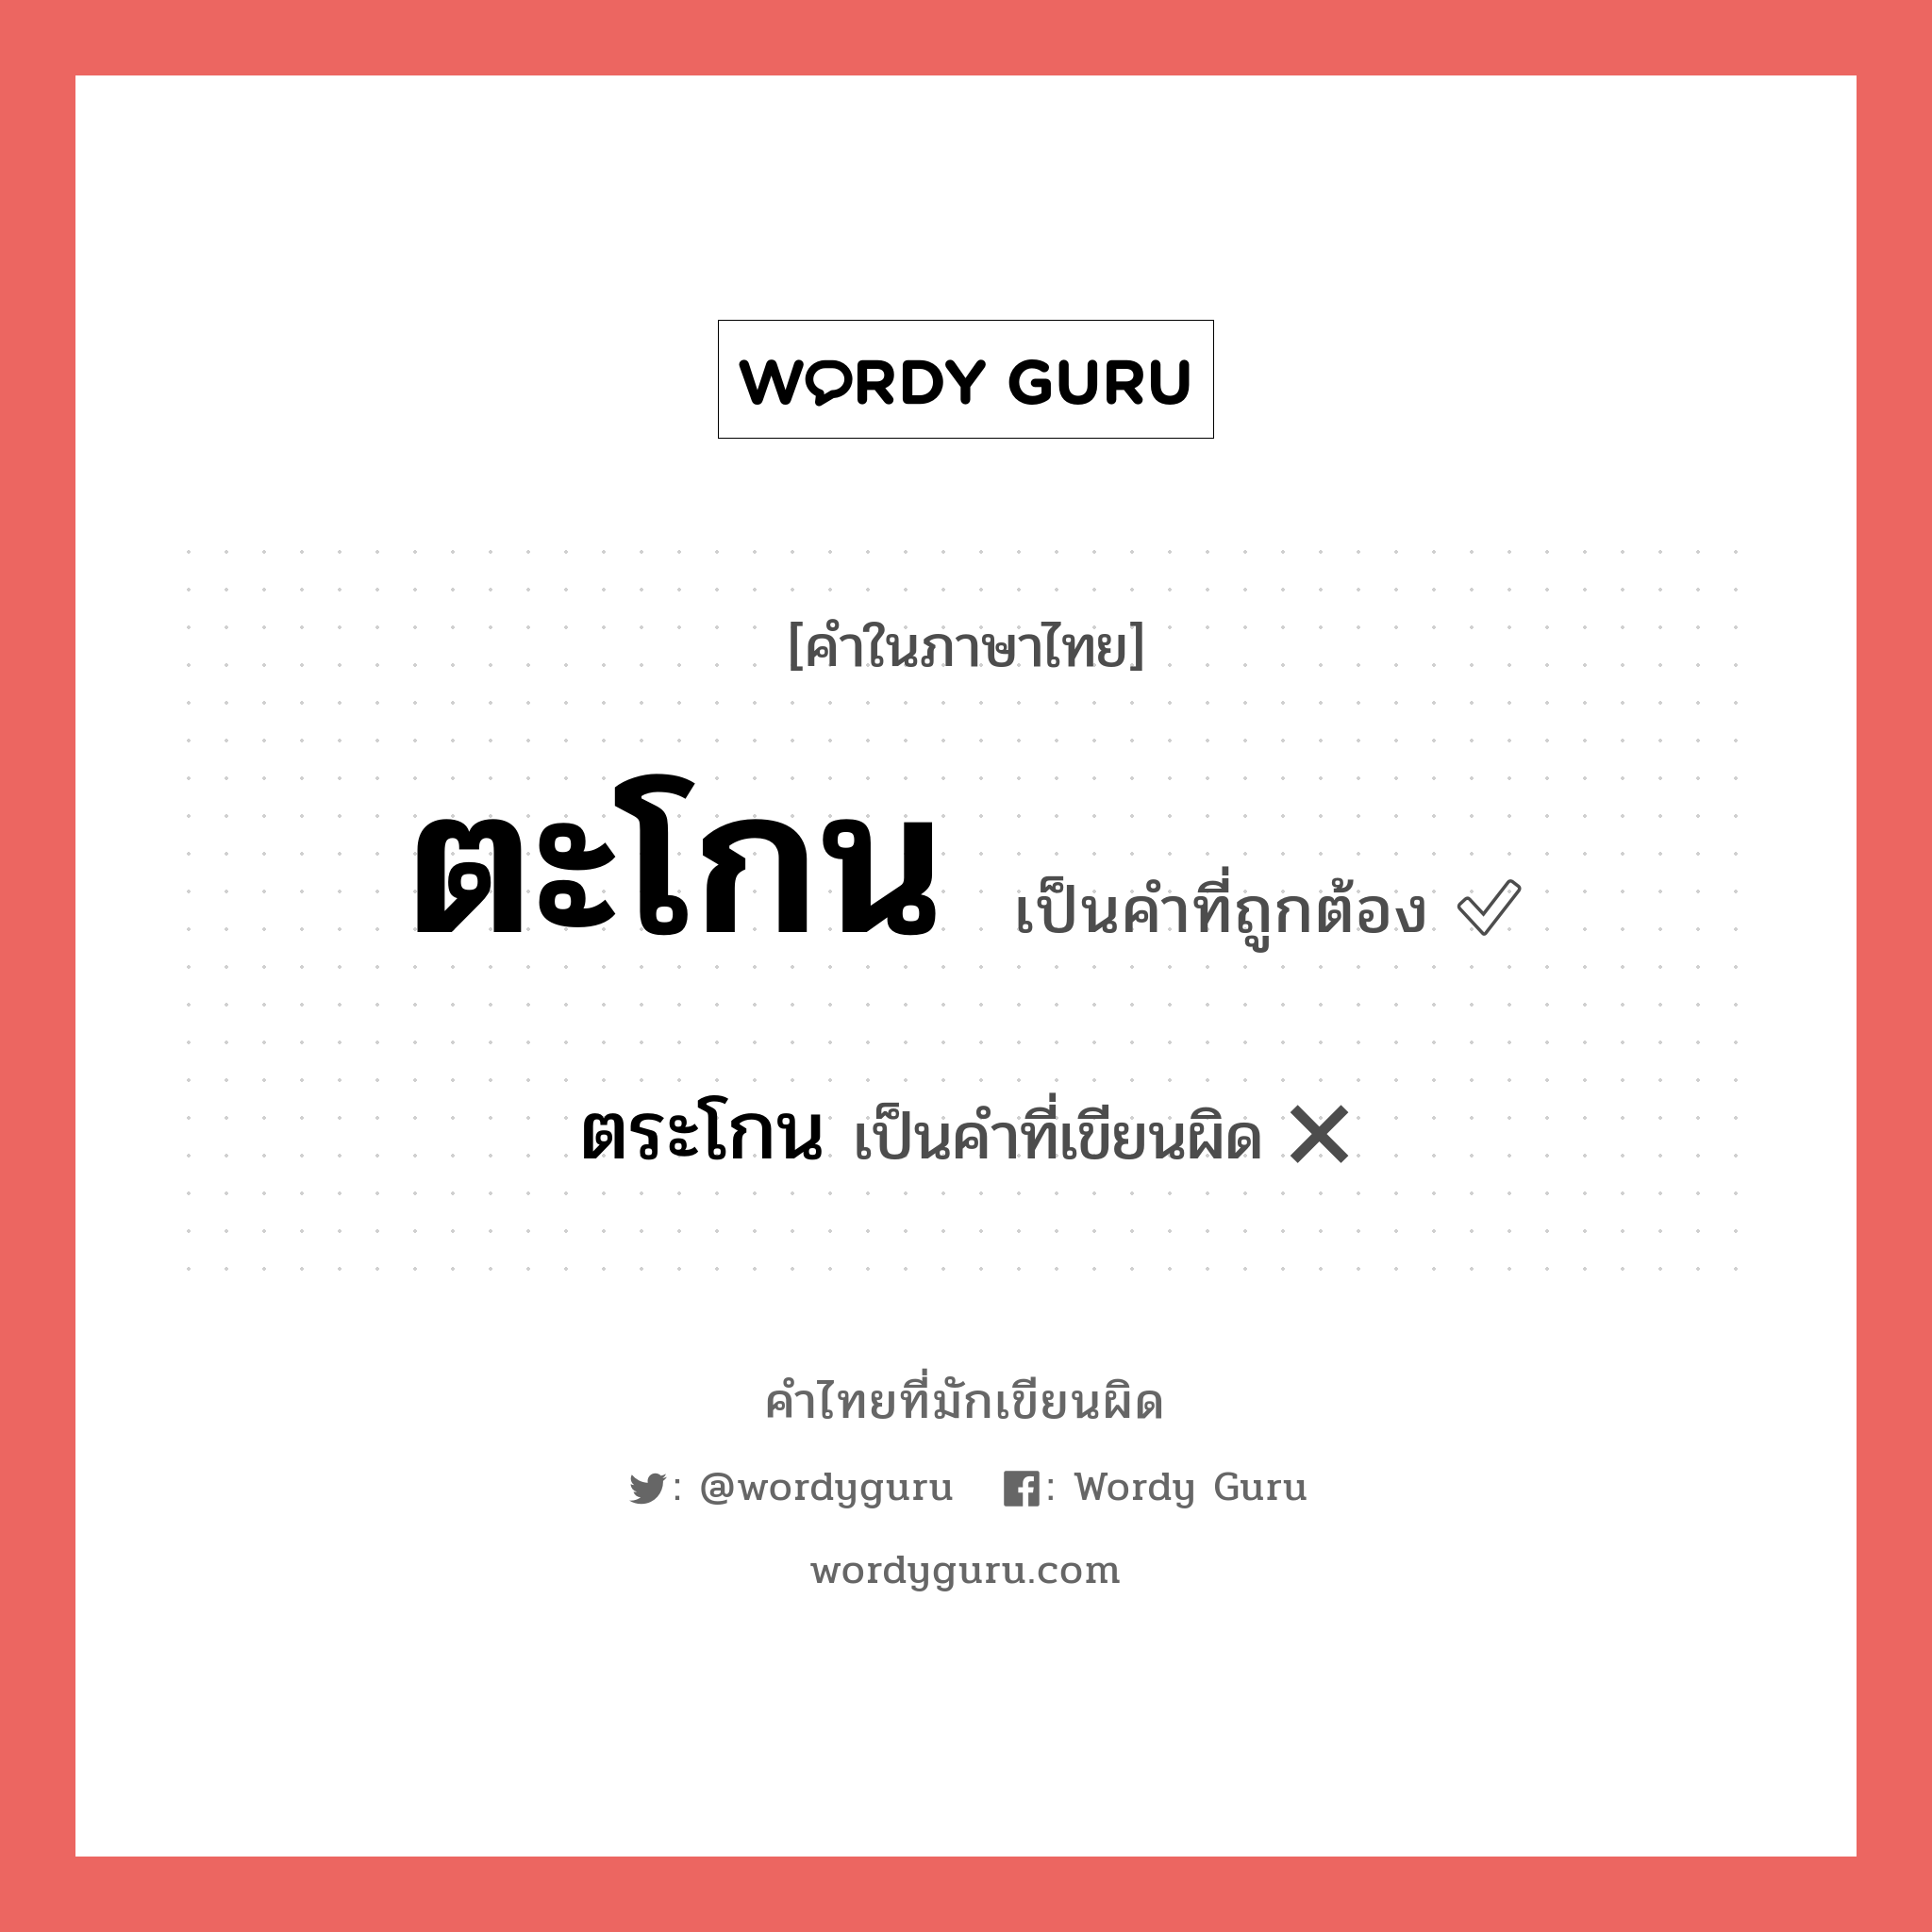 ตระโกน หรือ ตะโกน คำไหนเขียนถูก?, คำในภาษาไทยที่มักเขียนผิด ตระโกน คำที่ผิด ❌ ตะโกน